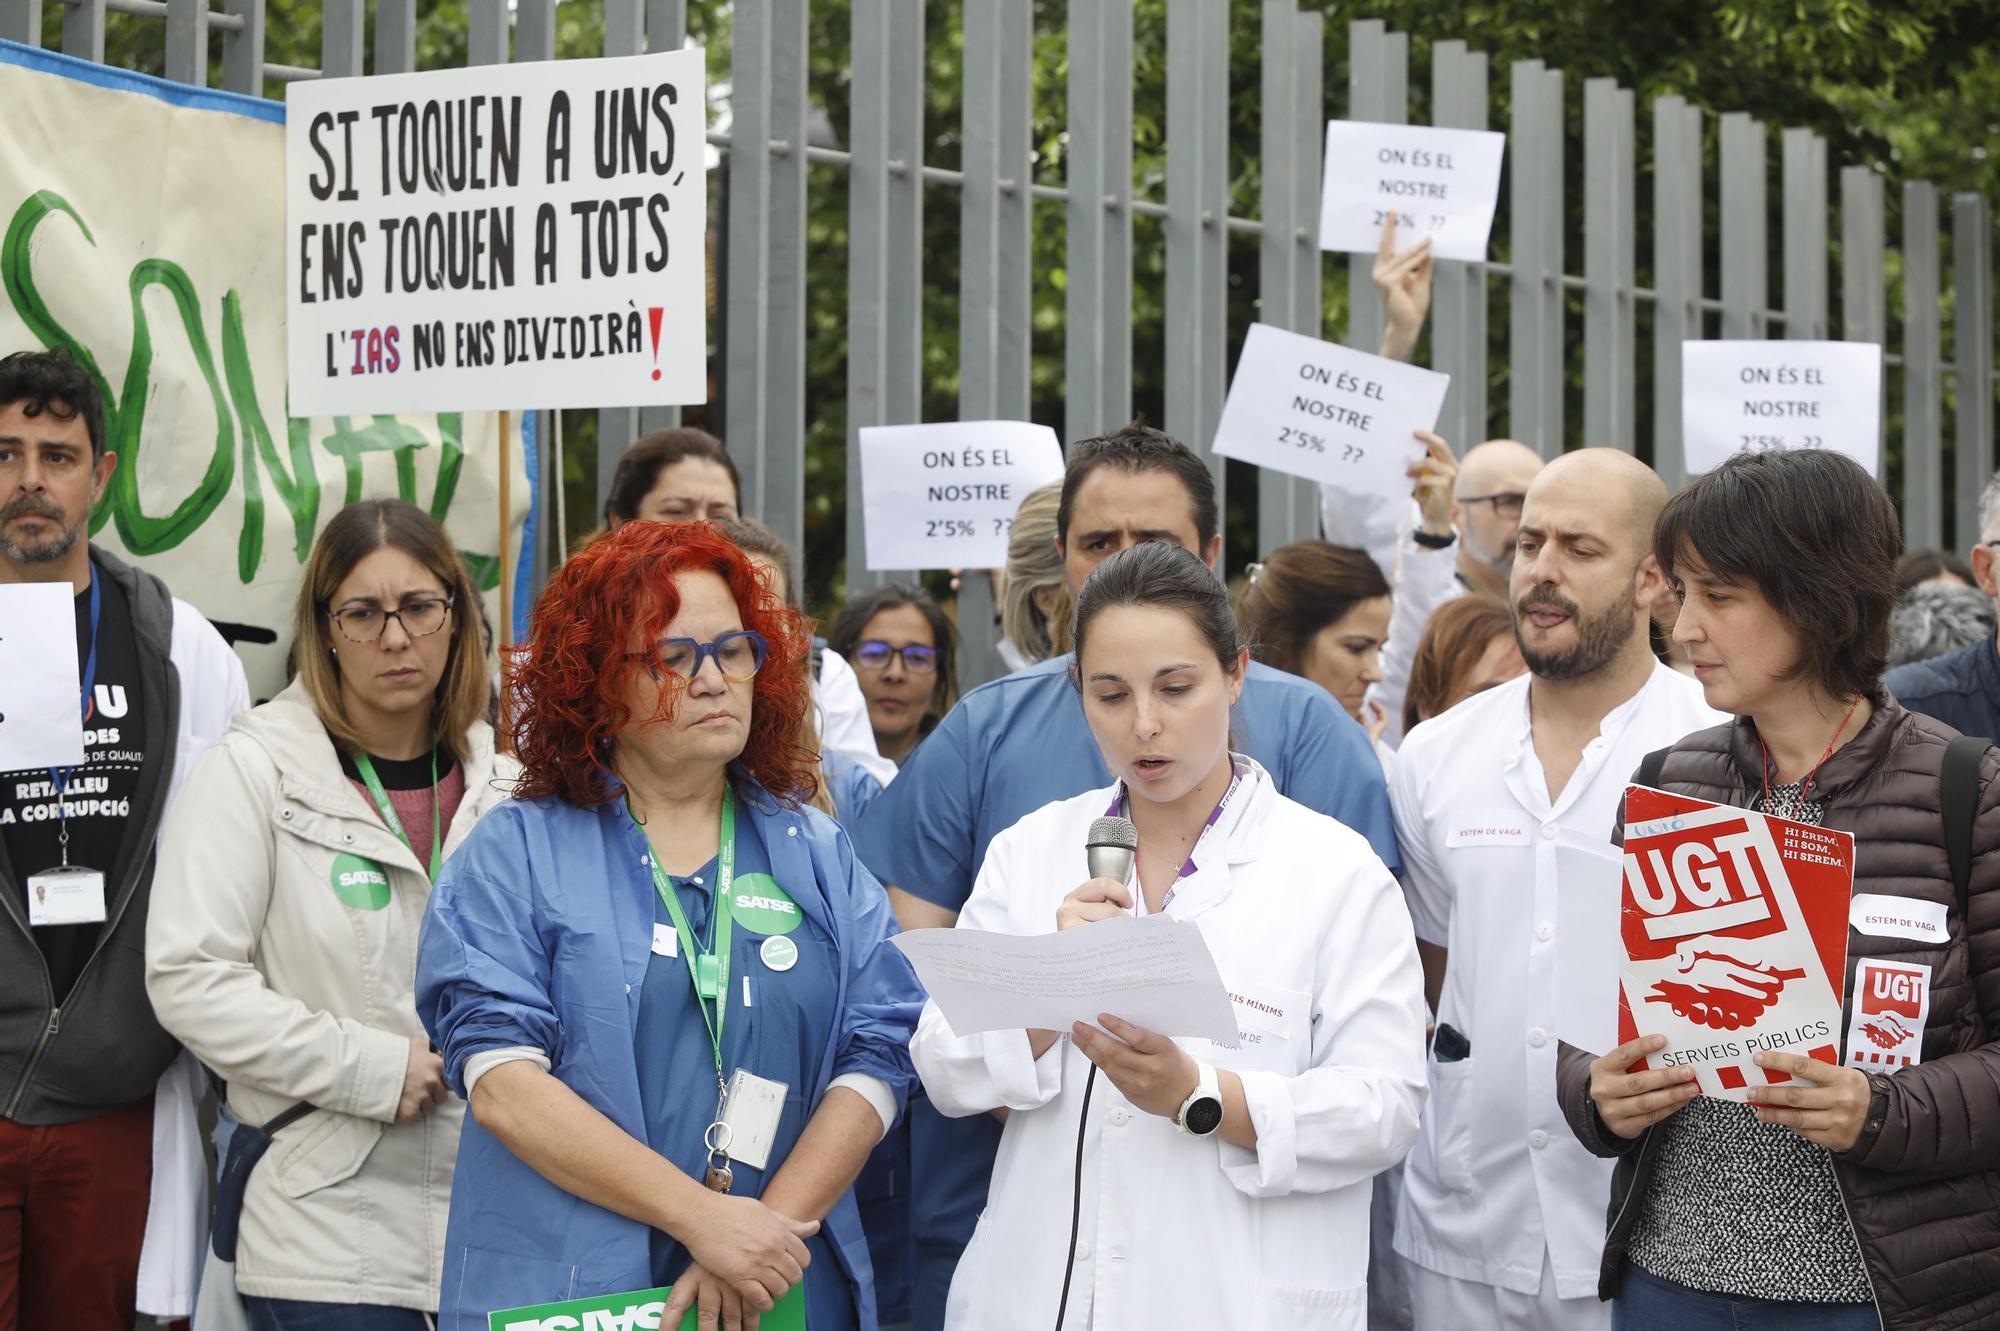 Treballadors de l'hospital Santa Caterina i Salut Mental denuncien que l'empresa s'oposa a negociar